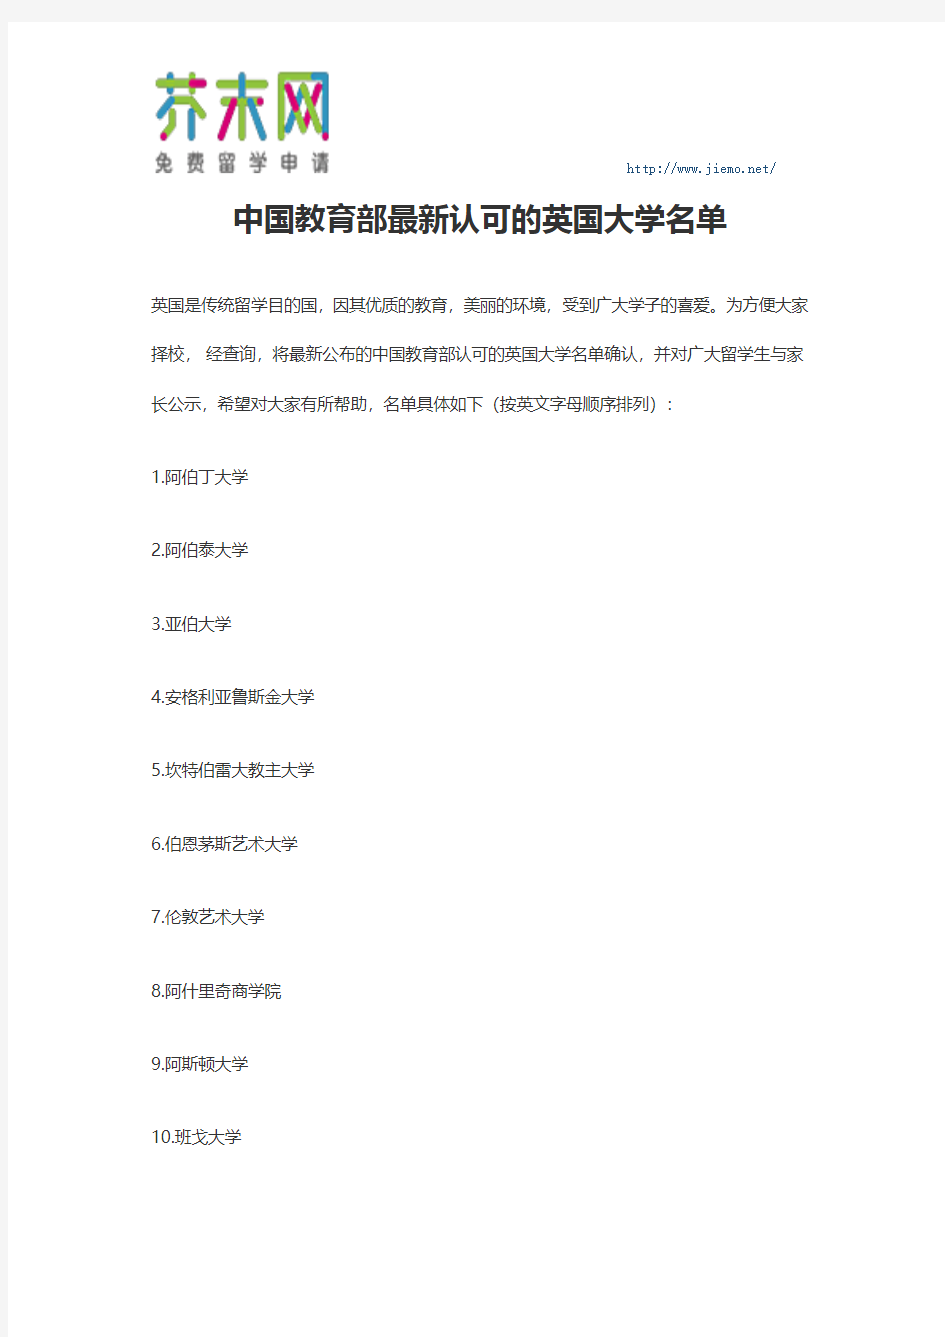 中国教育部最新认可的英国大学名单